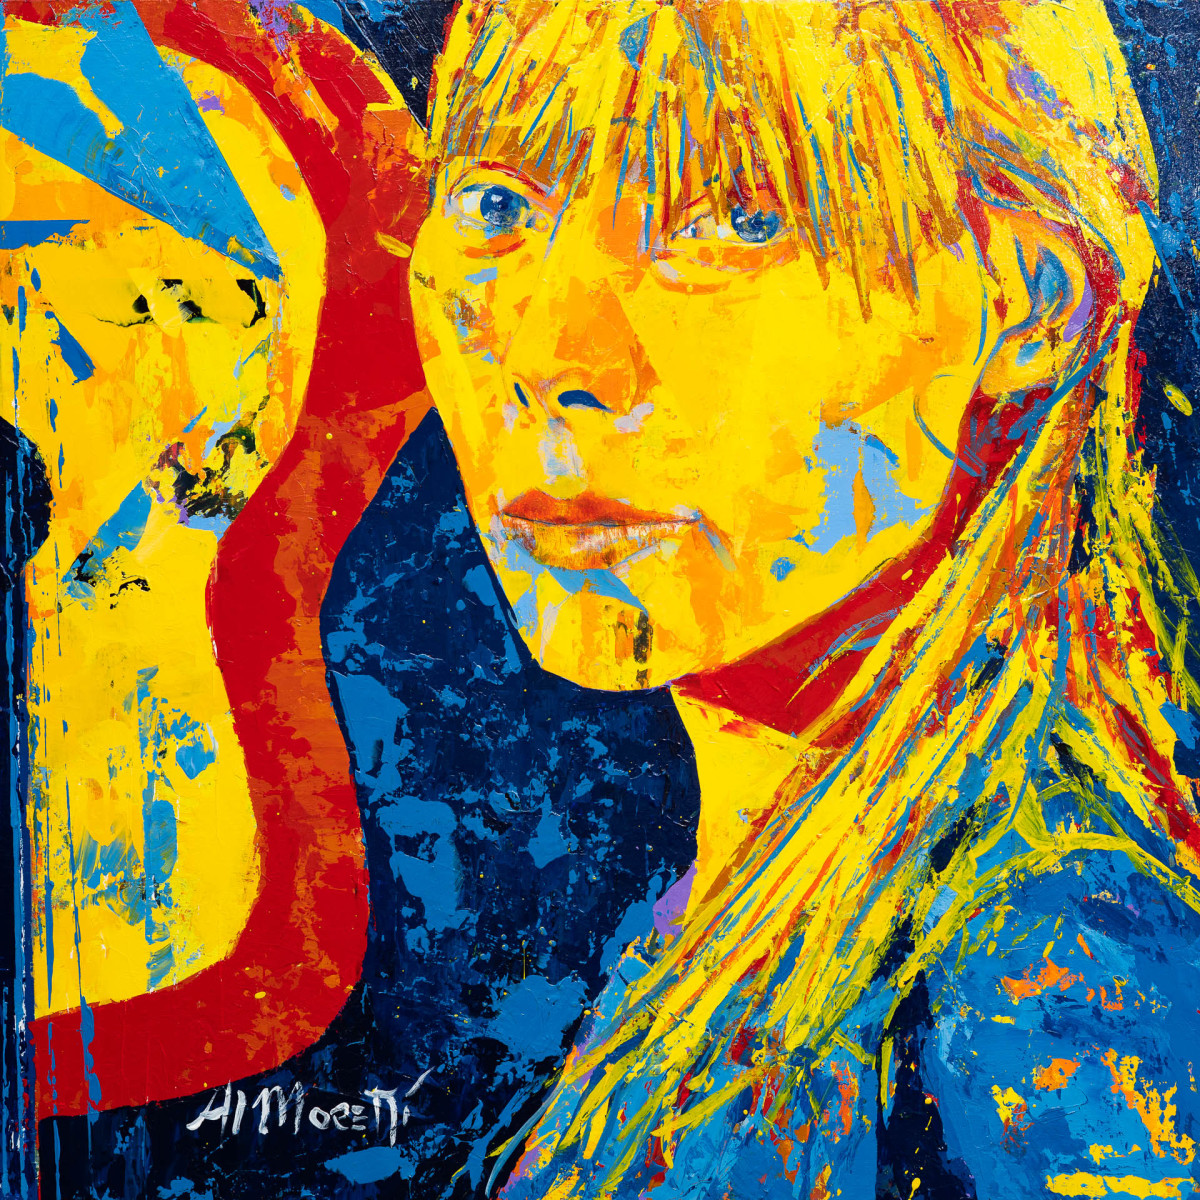 Joni Mitchell, "Woodstock" by Al Moretti 